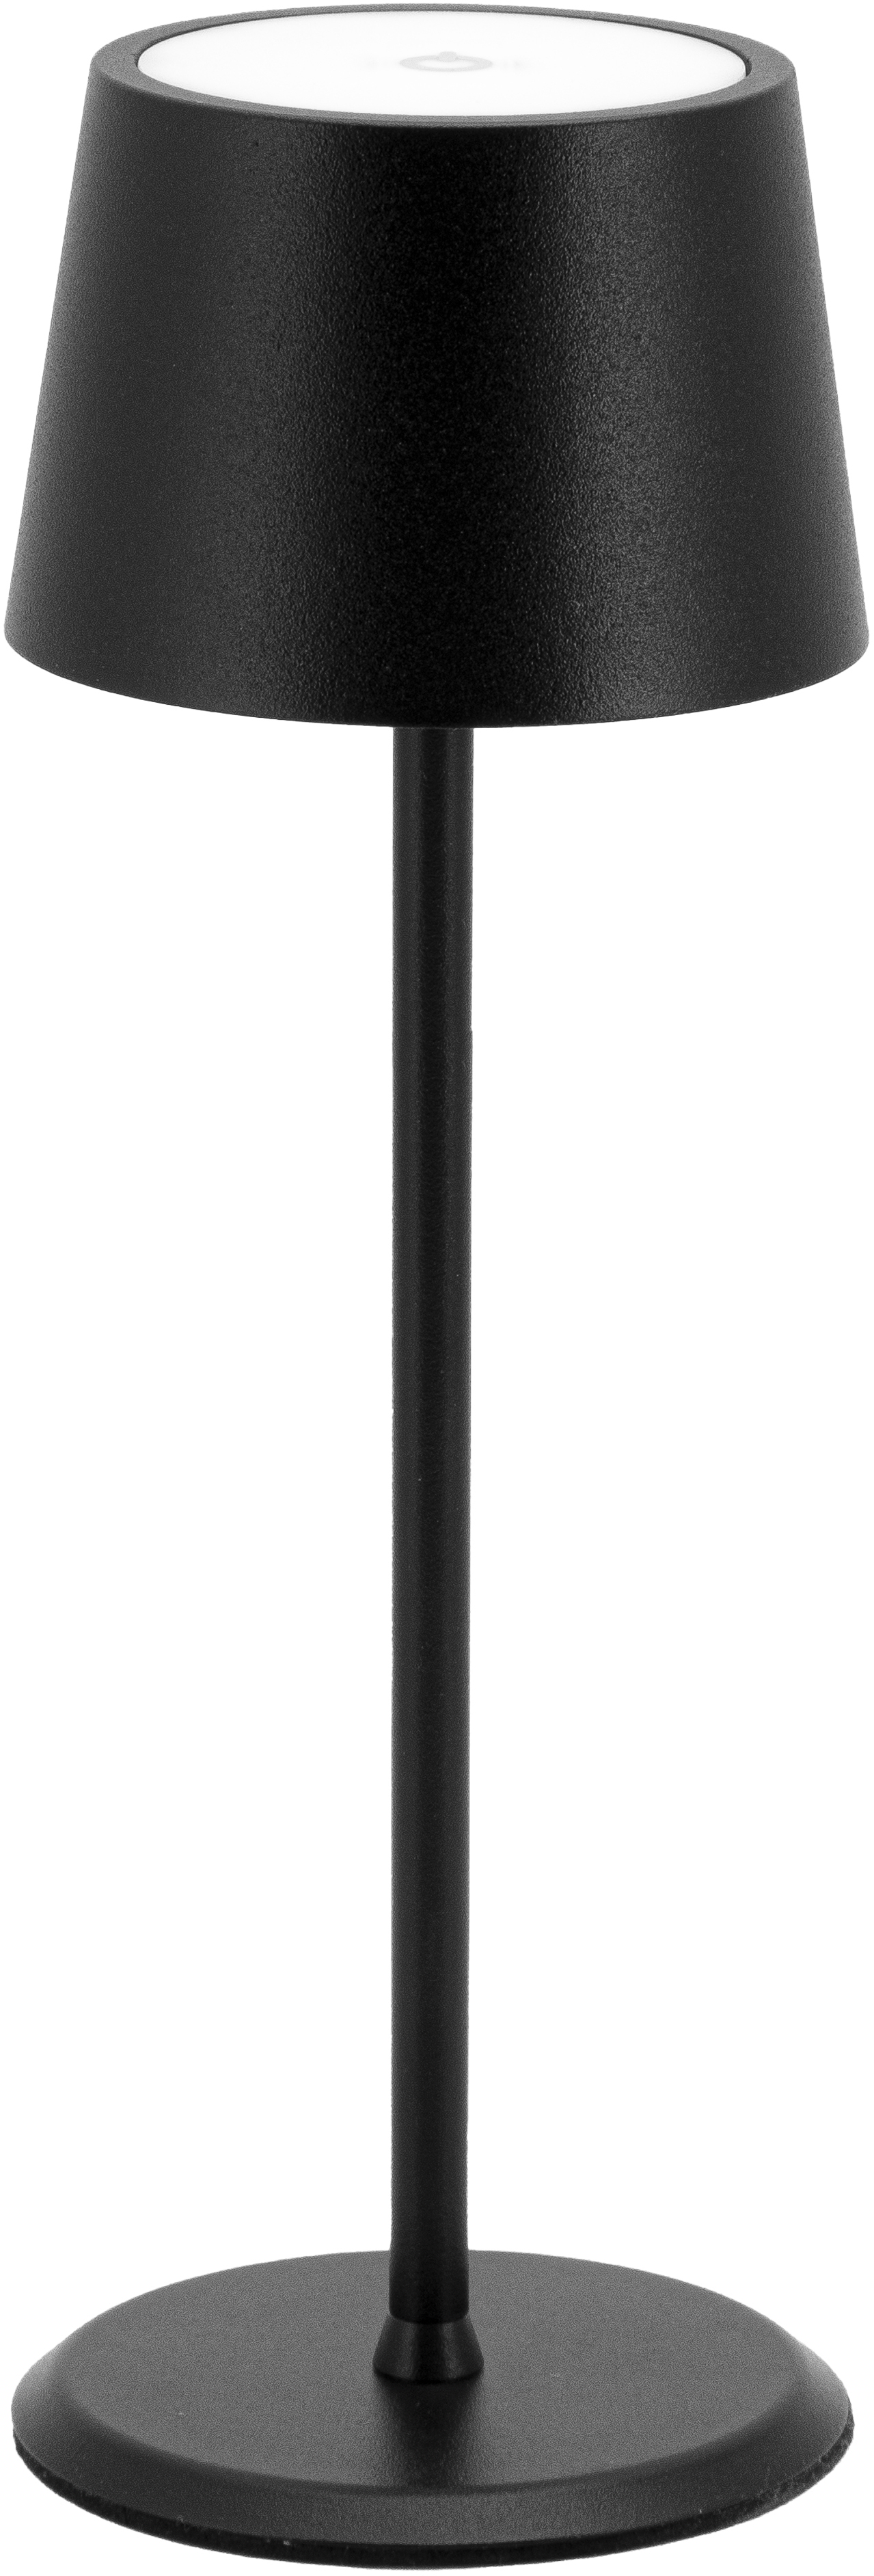 SECURIT Lampe de table MONTE CARLO LP-MC-BL noir, batterie, dimmable noir, batterie, dimmable